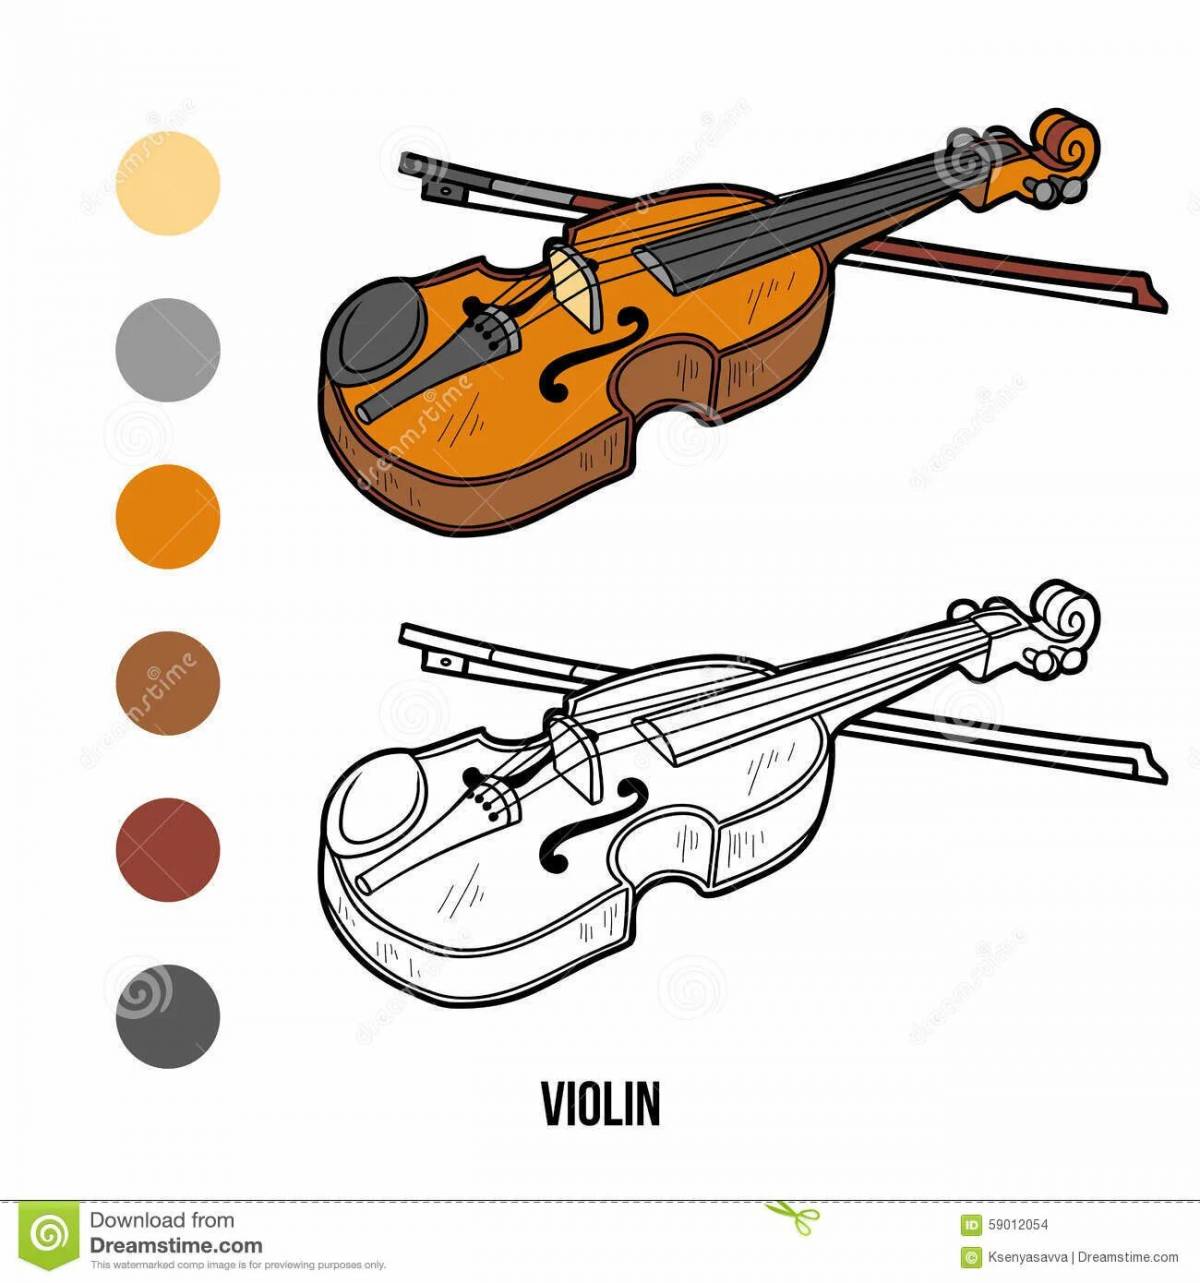 Нужен рисунок музыкального инструмента скрипка